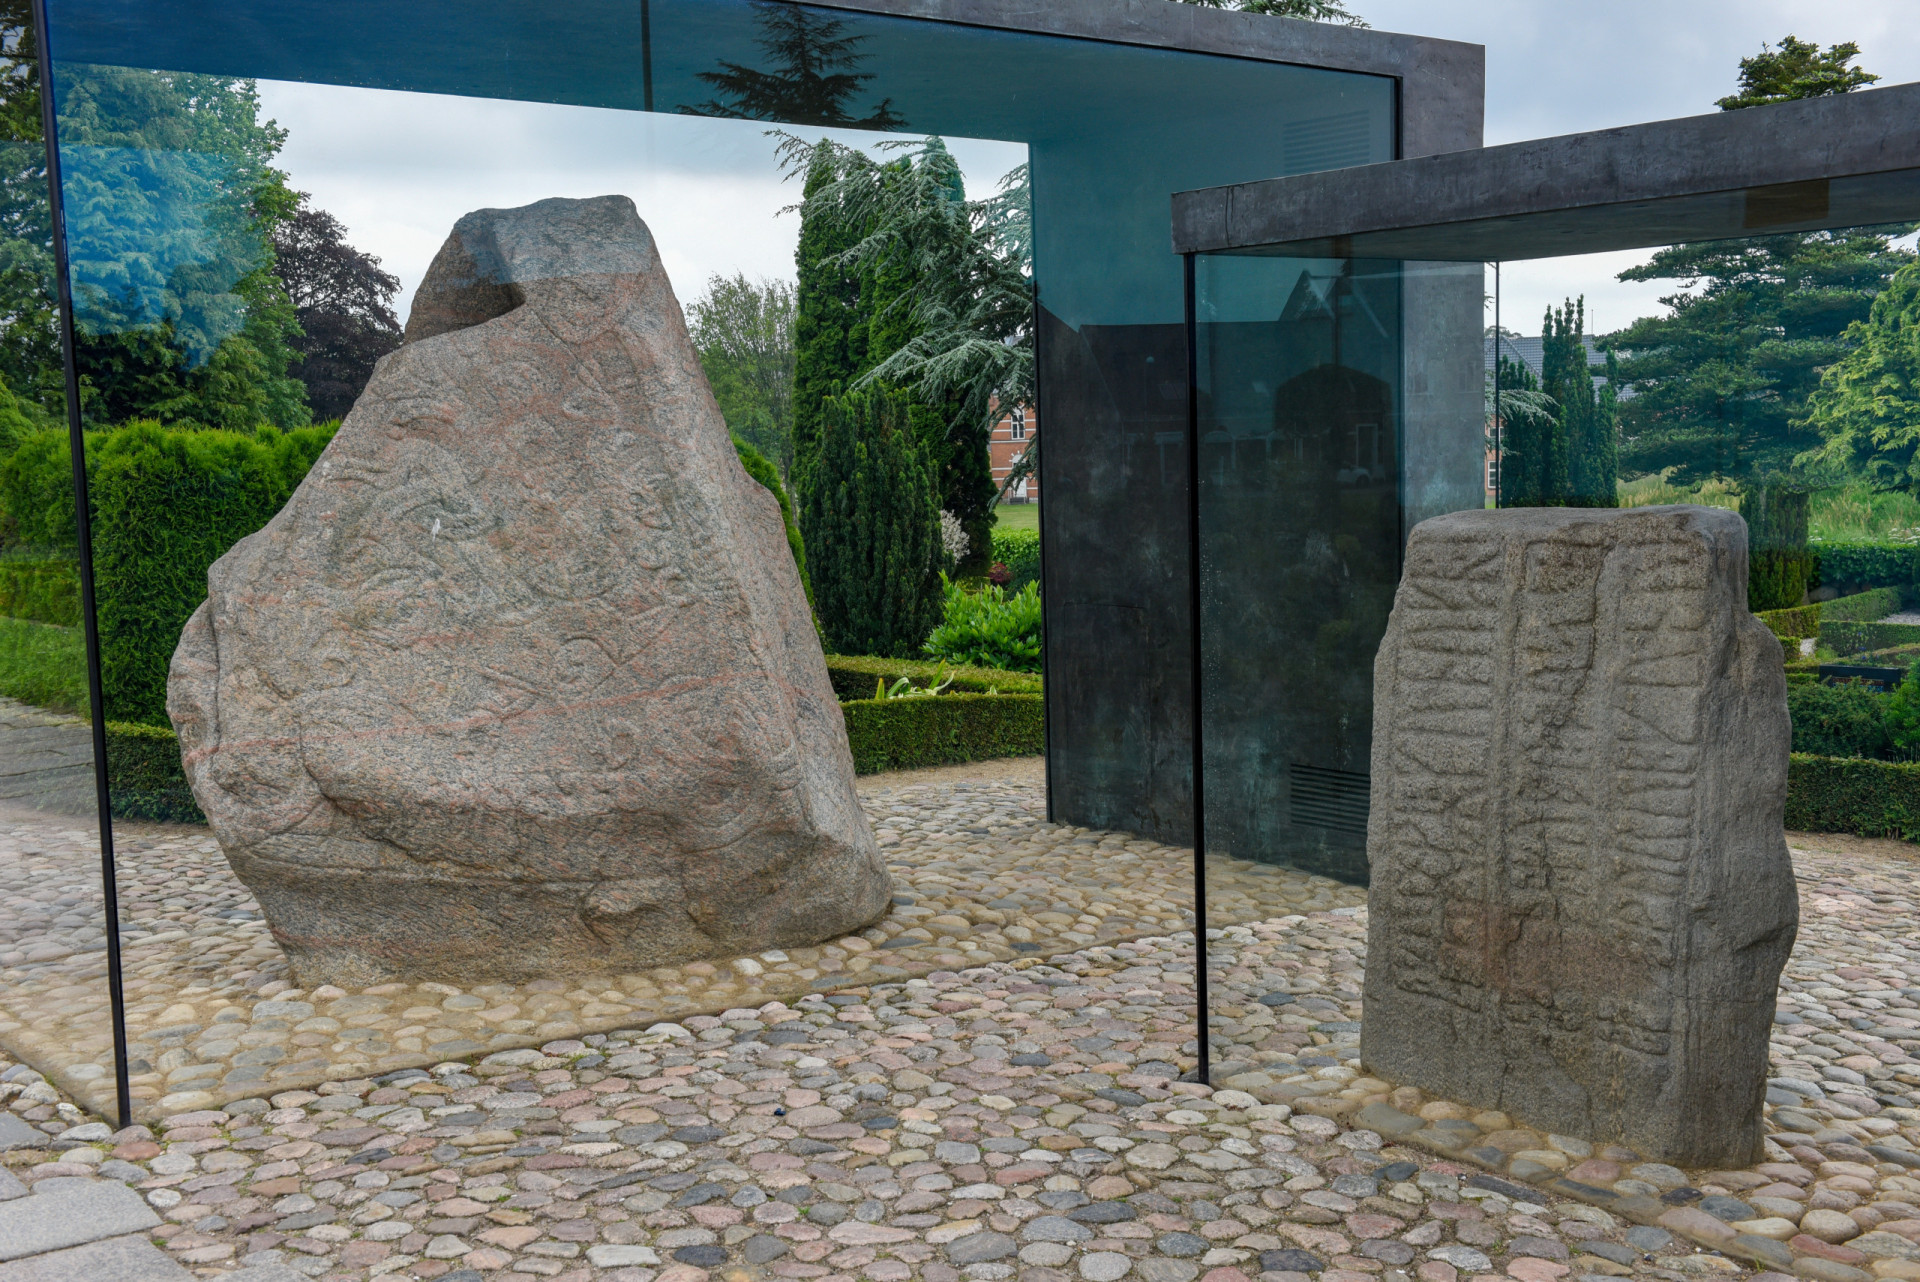 <p>Les pierres de Jelling sont d'imposantes roches runiques du 10e siècle, dont la plus grande inscription est dédiée aux parents du roi <span>Harald Ier (Harald Bluetooth). Aujourd'hui, la technologie Bluetooth est nommée d'après le monarque nordique et les pierres sont protégées au patrimoine mondial de l'UNESCO.</span></p><p>Tu pourrais aussi aimer:<a href="https://www.starsinsider.com/n/354440?utm_source=msn.com&utm_medium=display&utm_campaign=referral_description&utm_content=525365v2"> Ella Fitzgerald: sa vie en images</a></p>